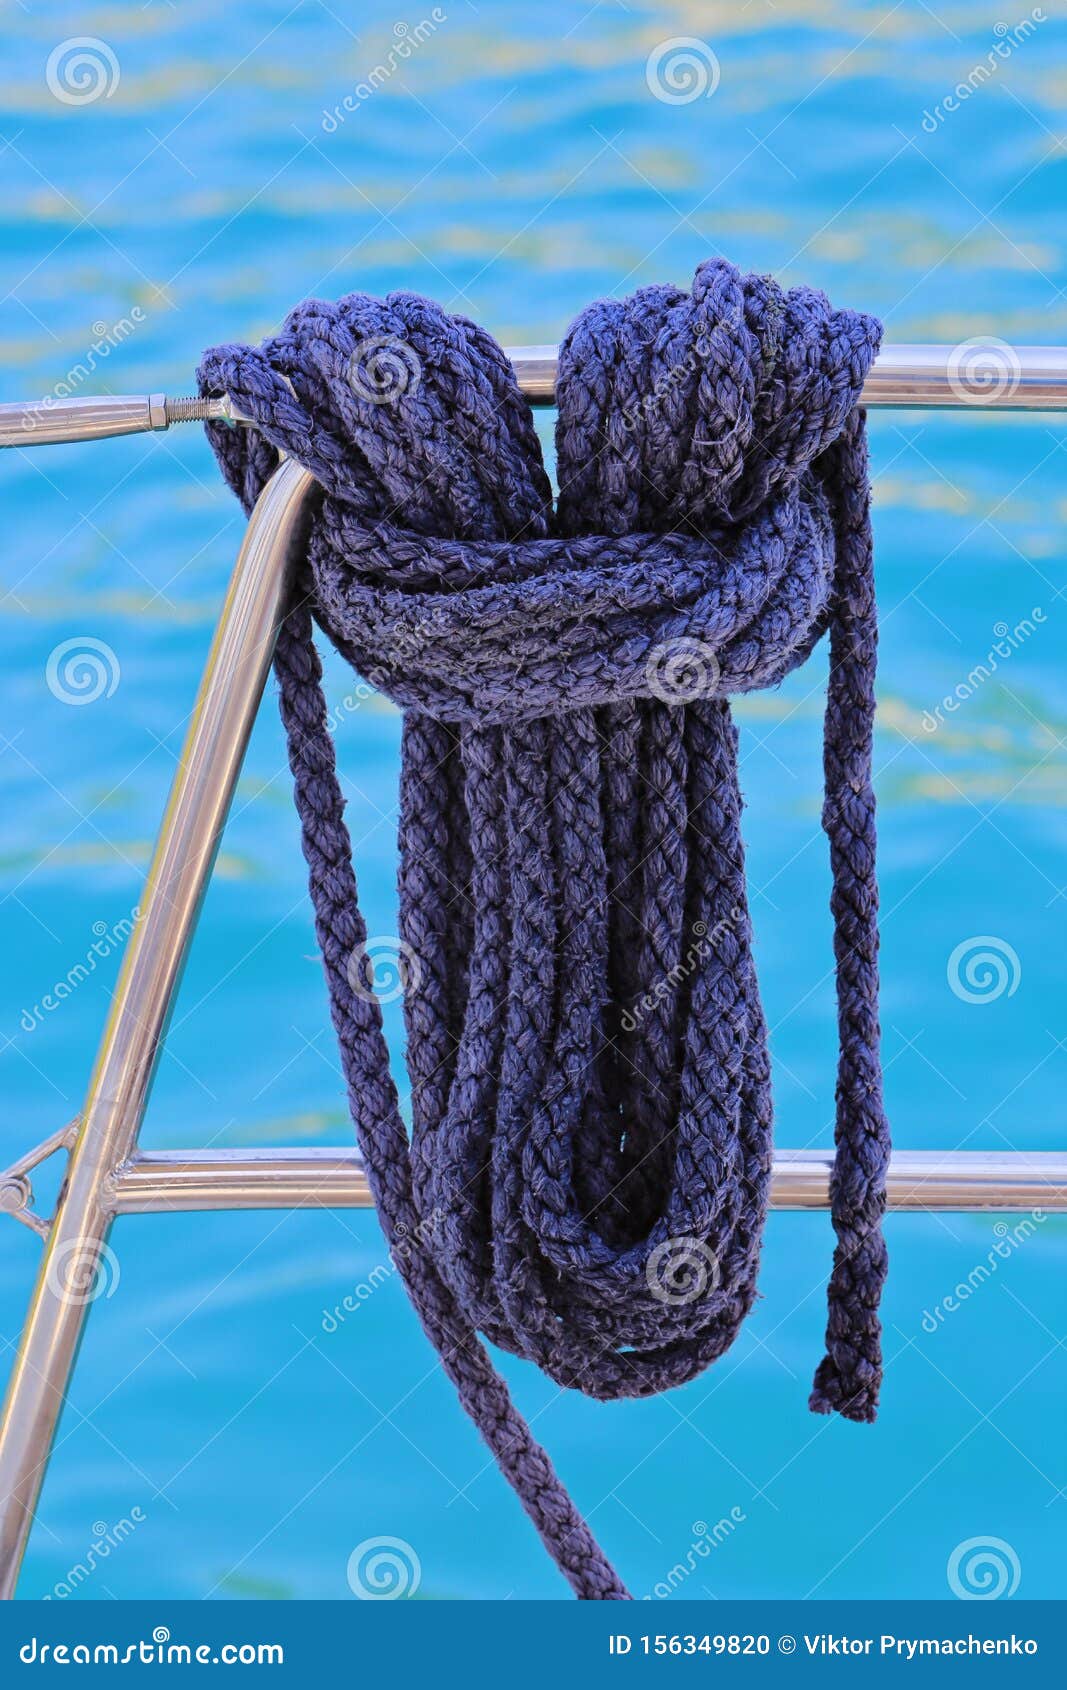 yachting rope